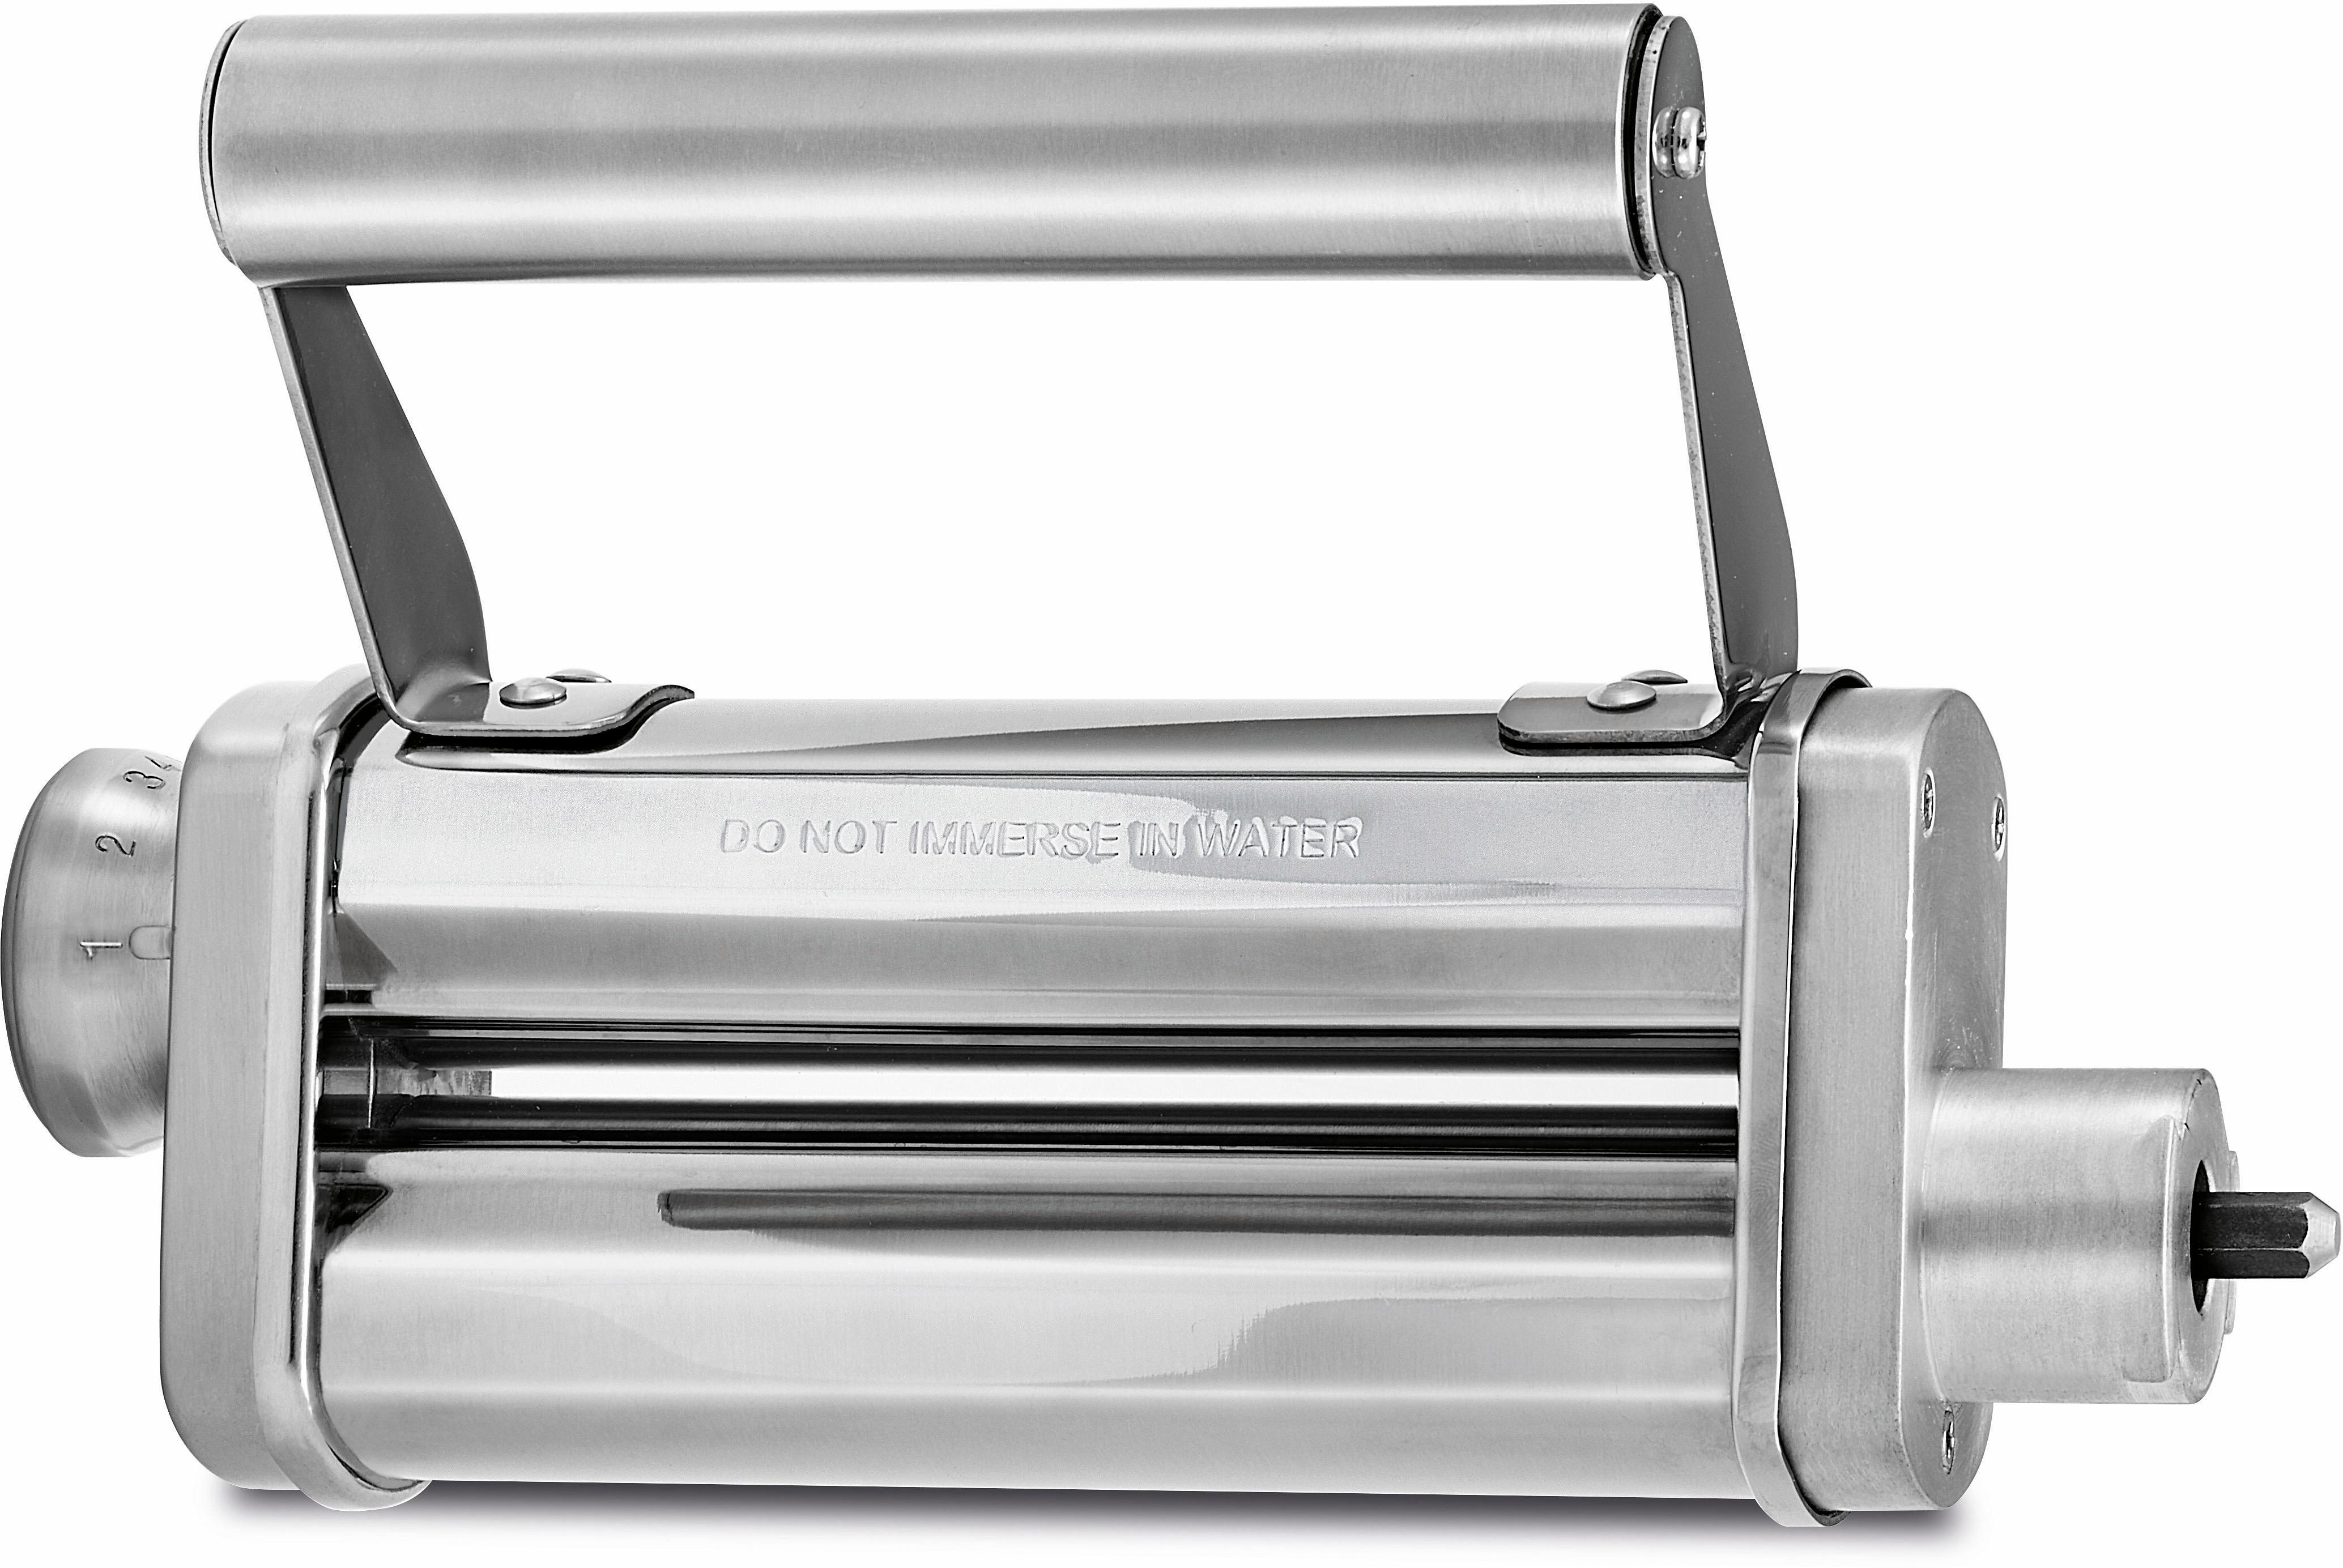 WMF Küchenmaschine mit Kochfunktion WMF 0416950021 Teigroller Metall